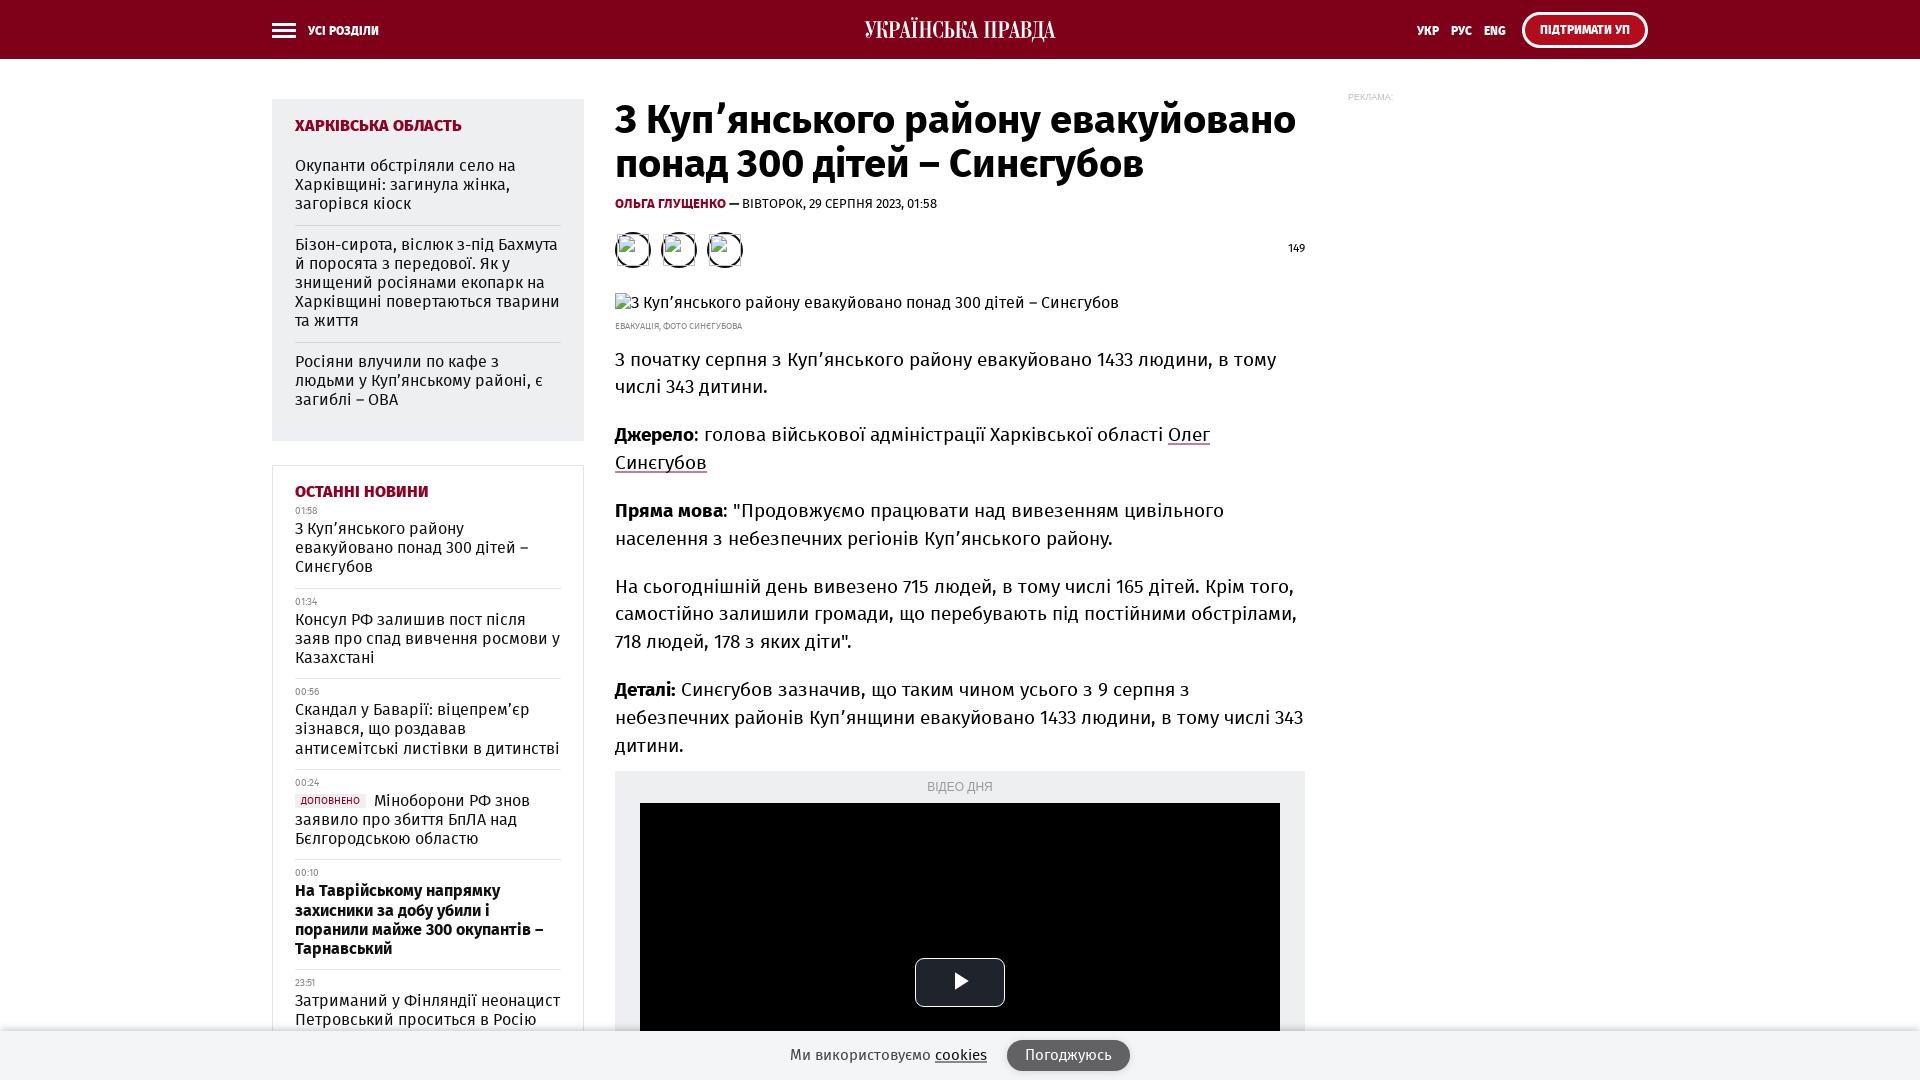 Ponad 300 dzieci ewakuowano z obwodu kupiańskiego – Sinegubov |  bot wiadomości